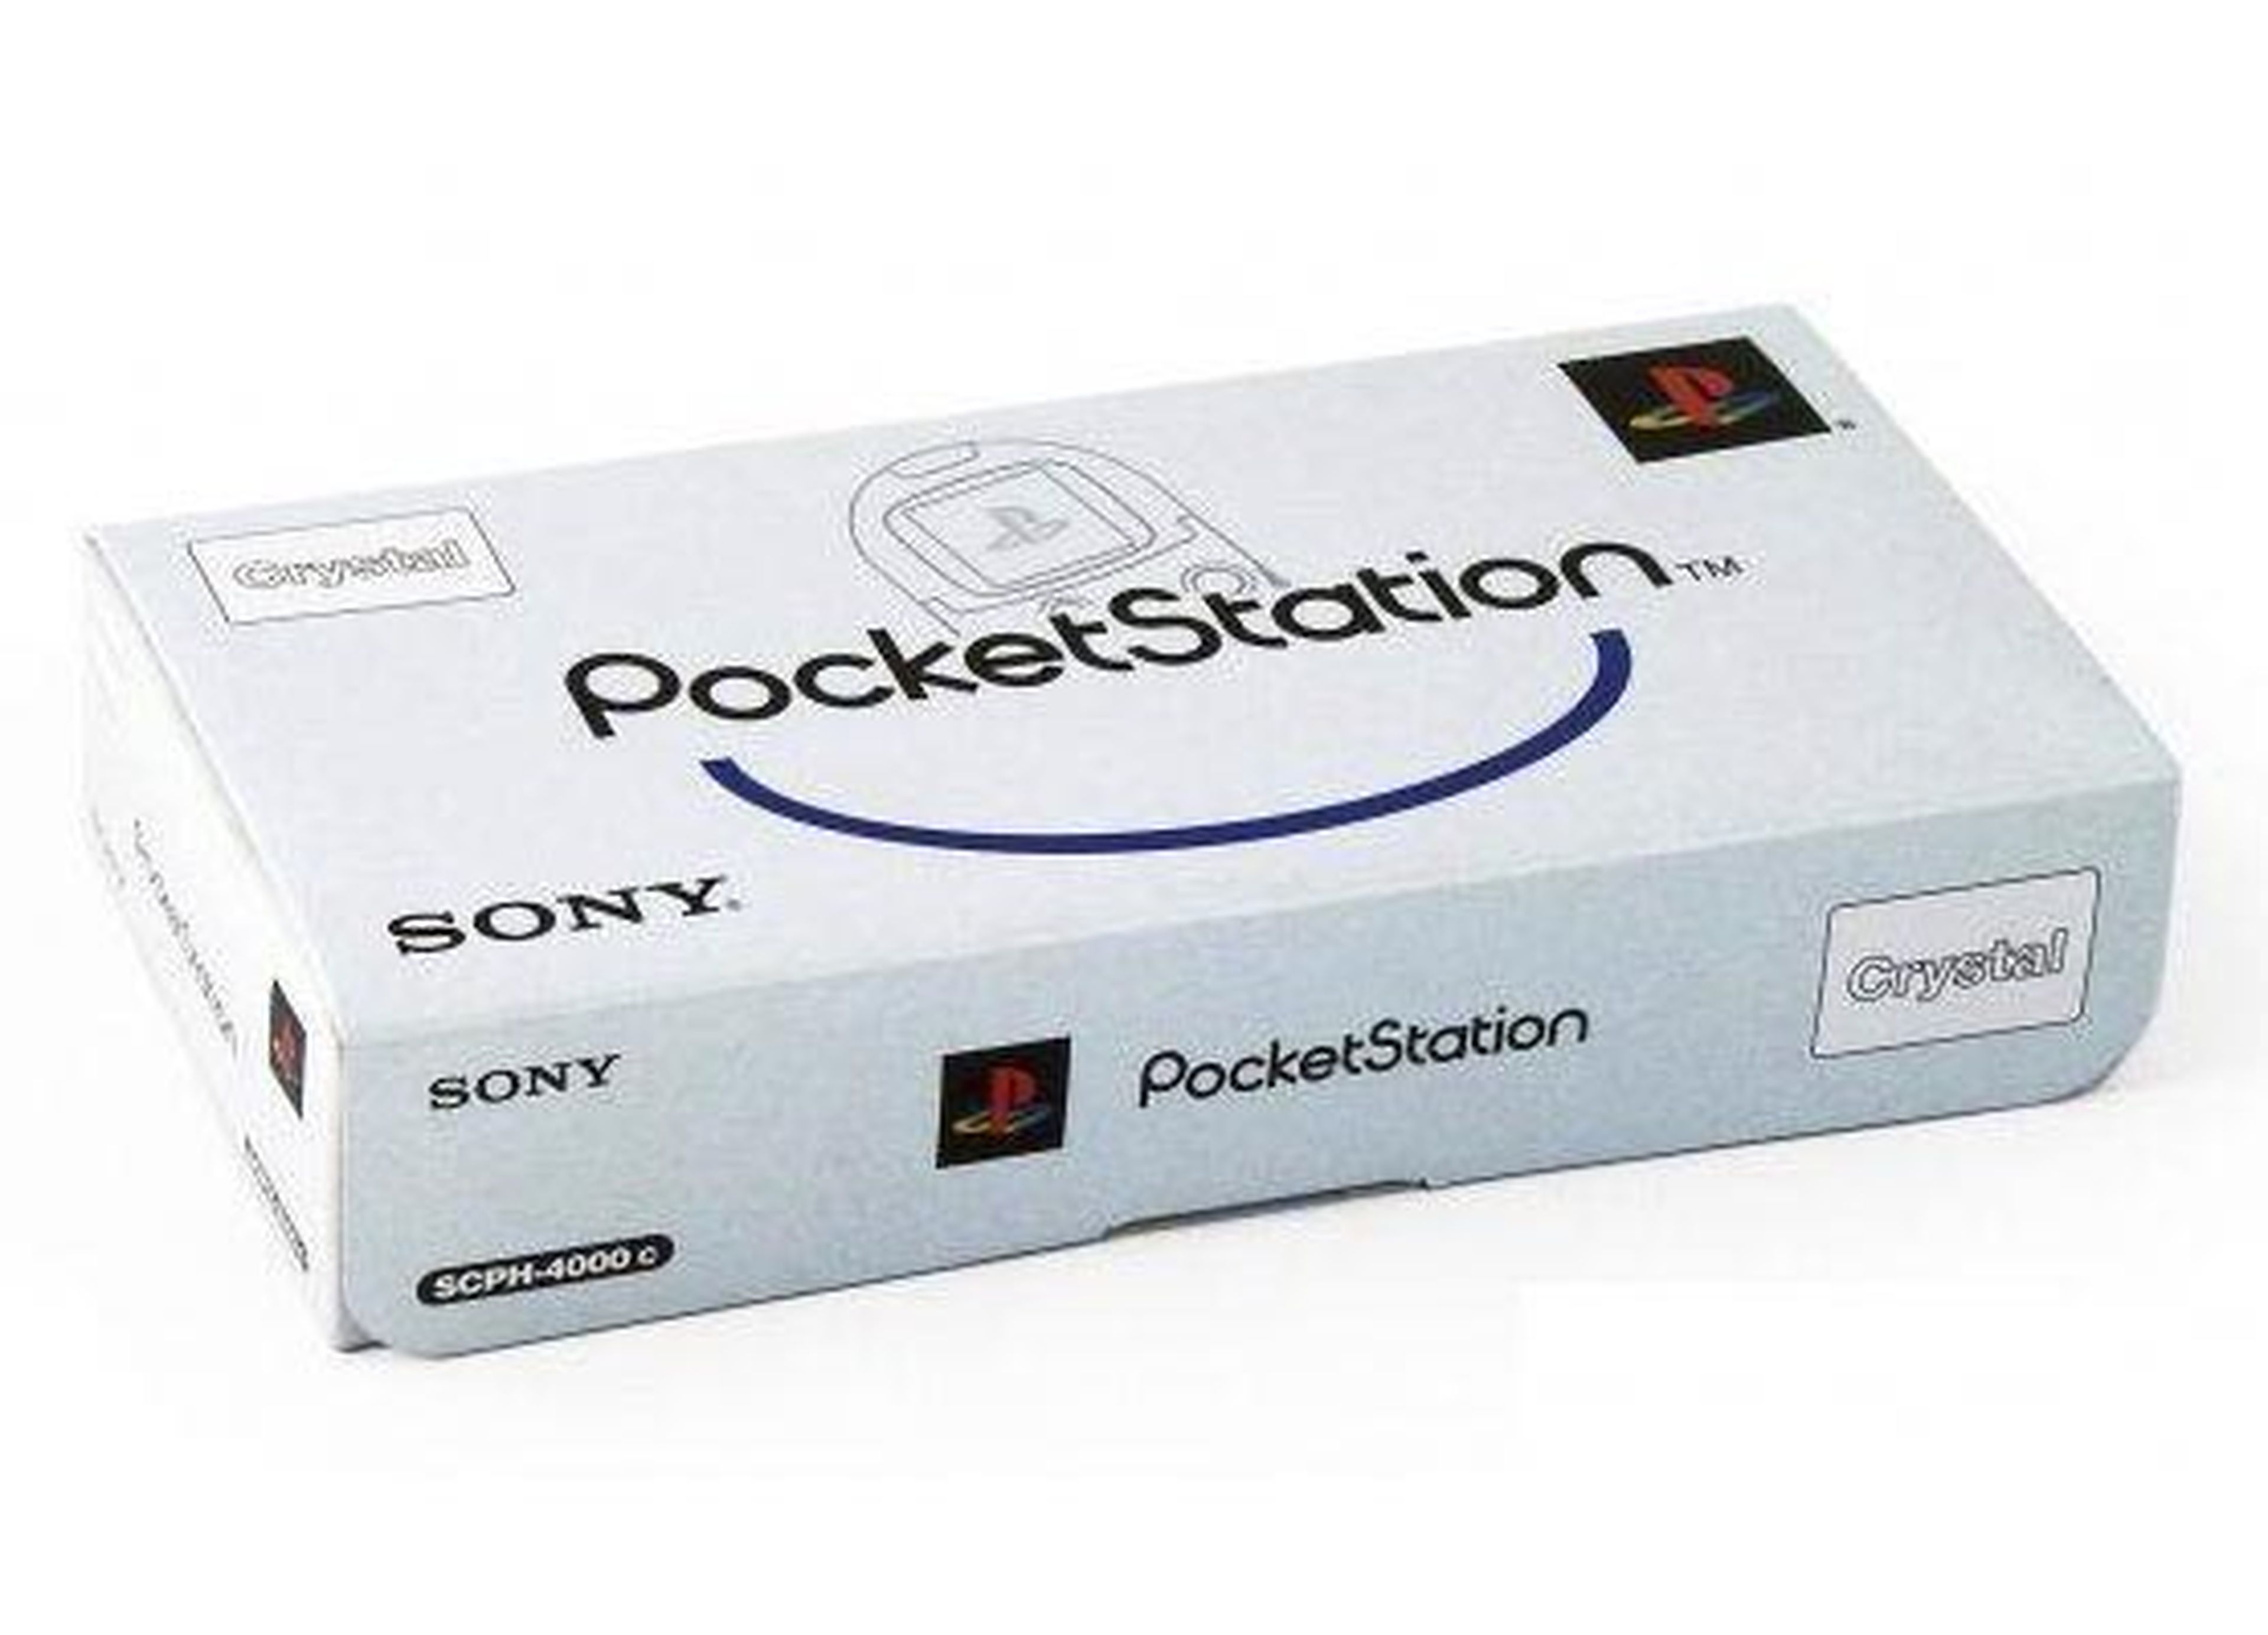 Pocketstation